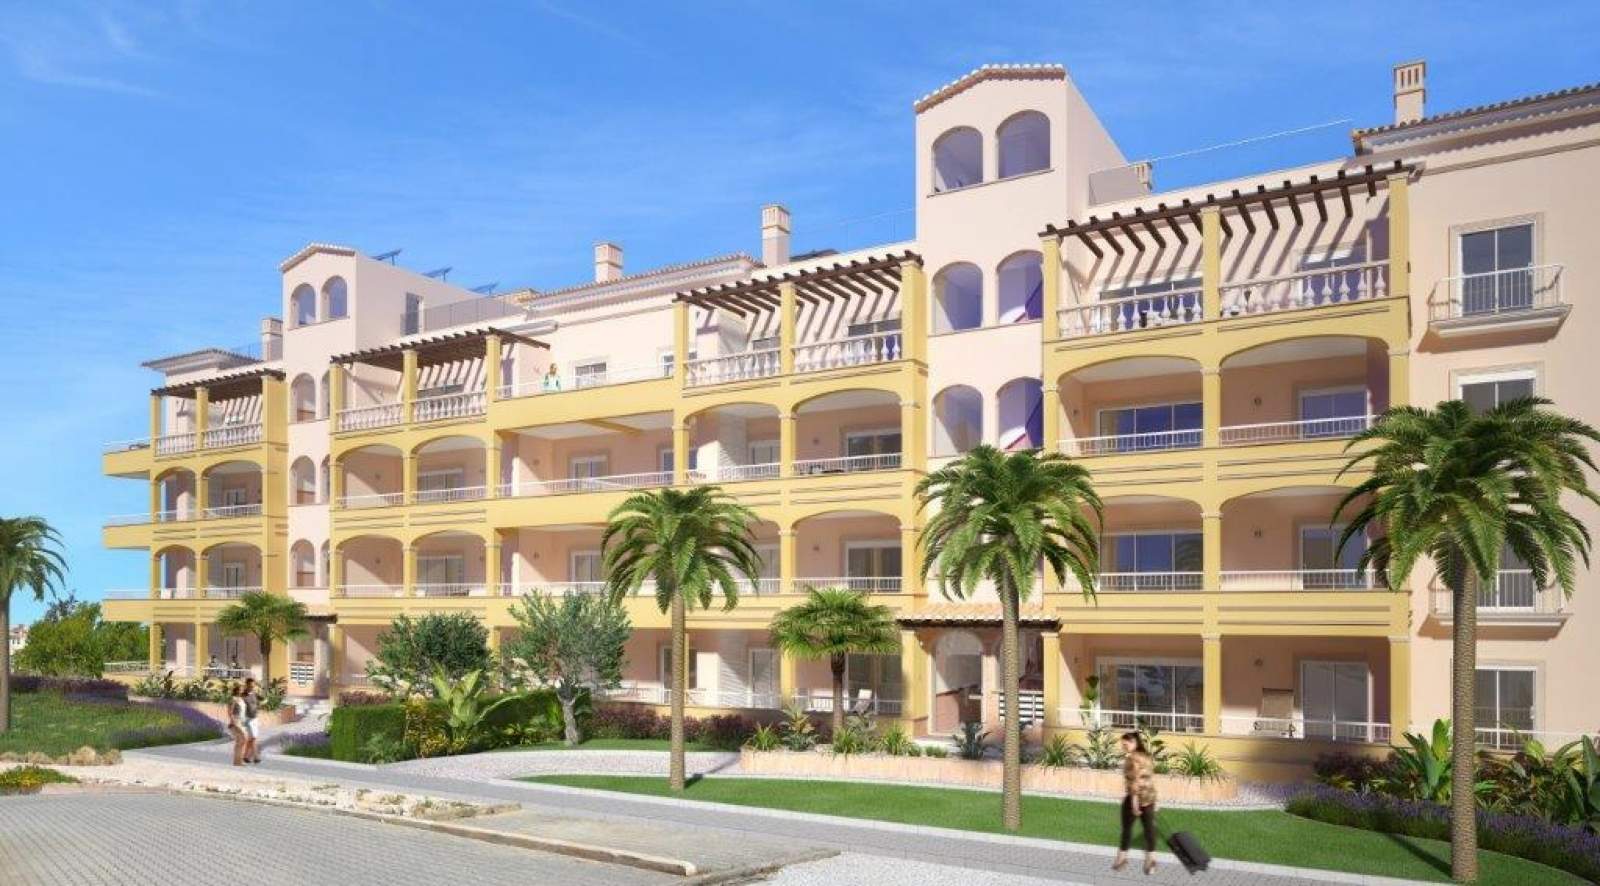 Verkauf einer Wohnung im Bau, mit Terrasse, Lagos, Algarve, Portugal_141601